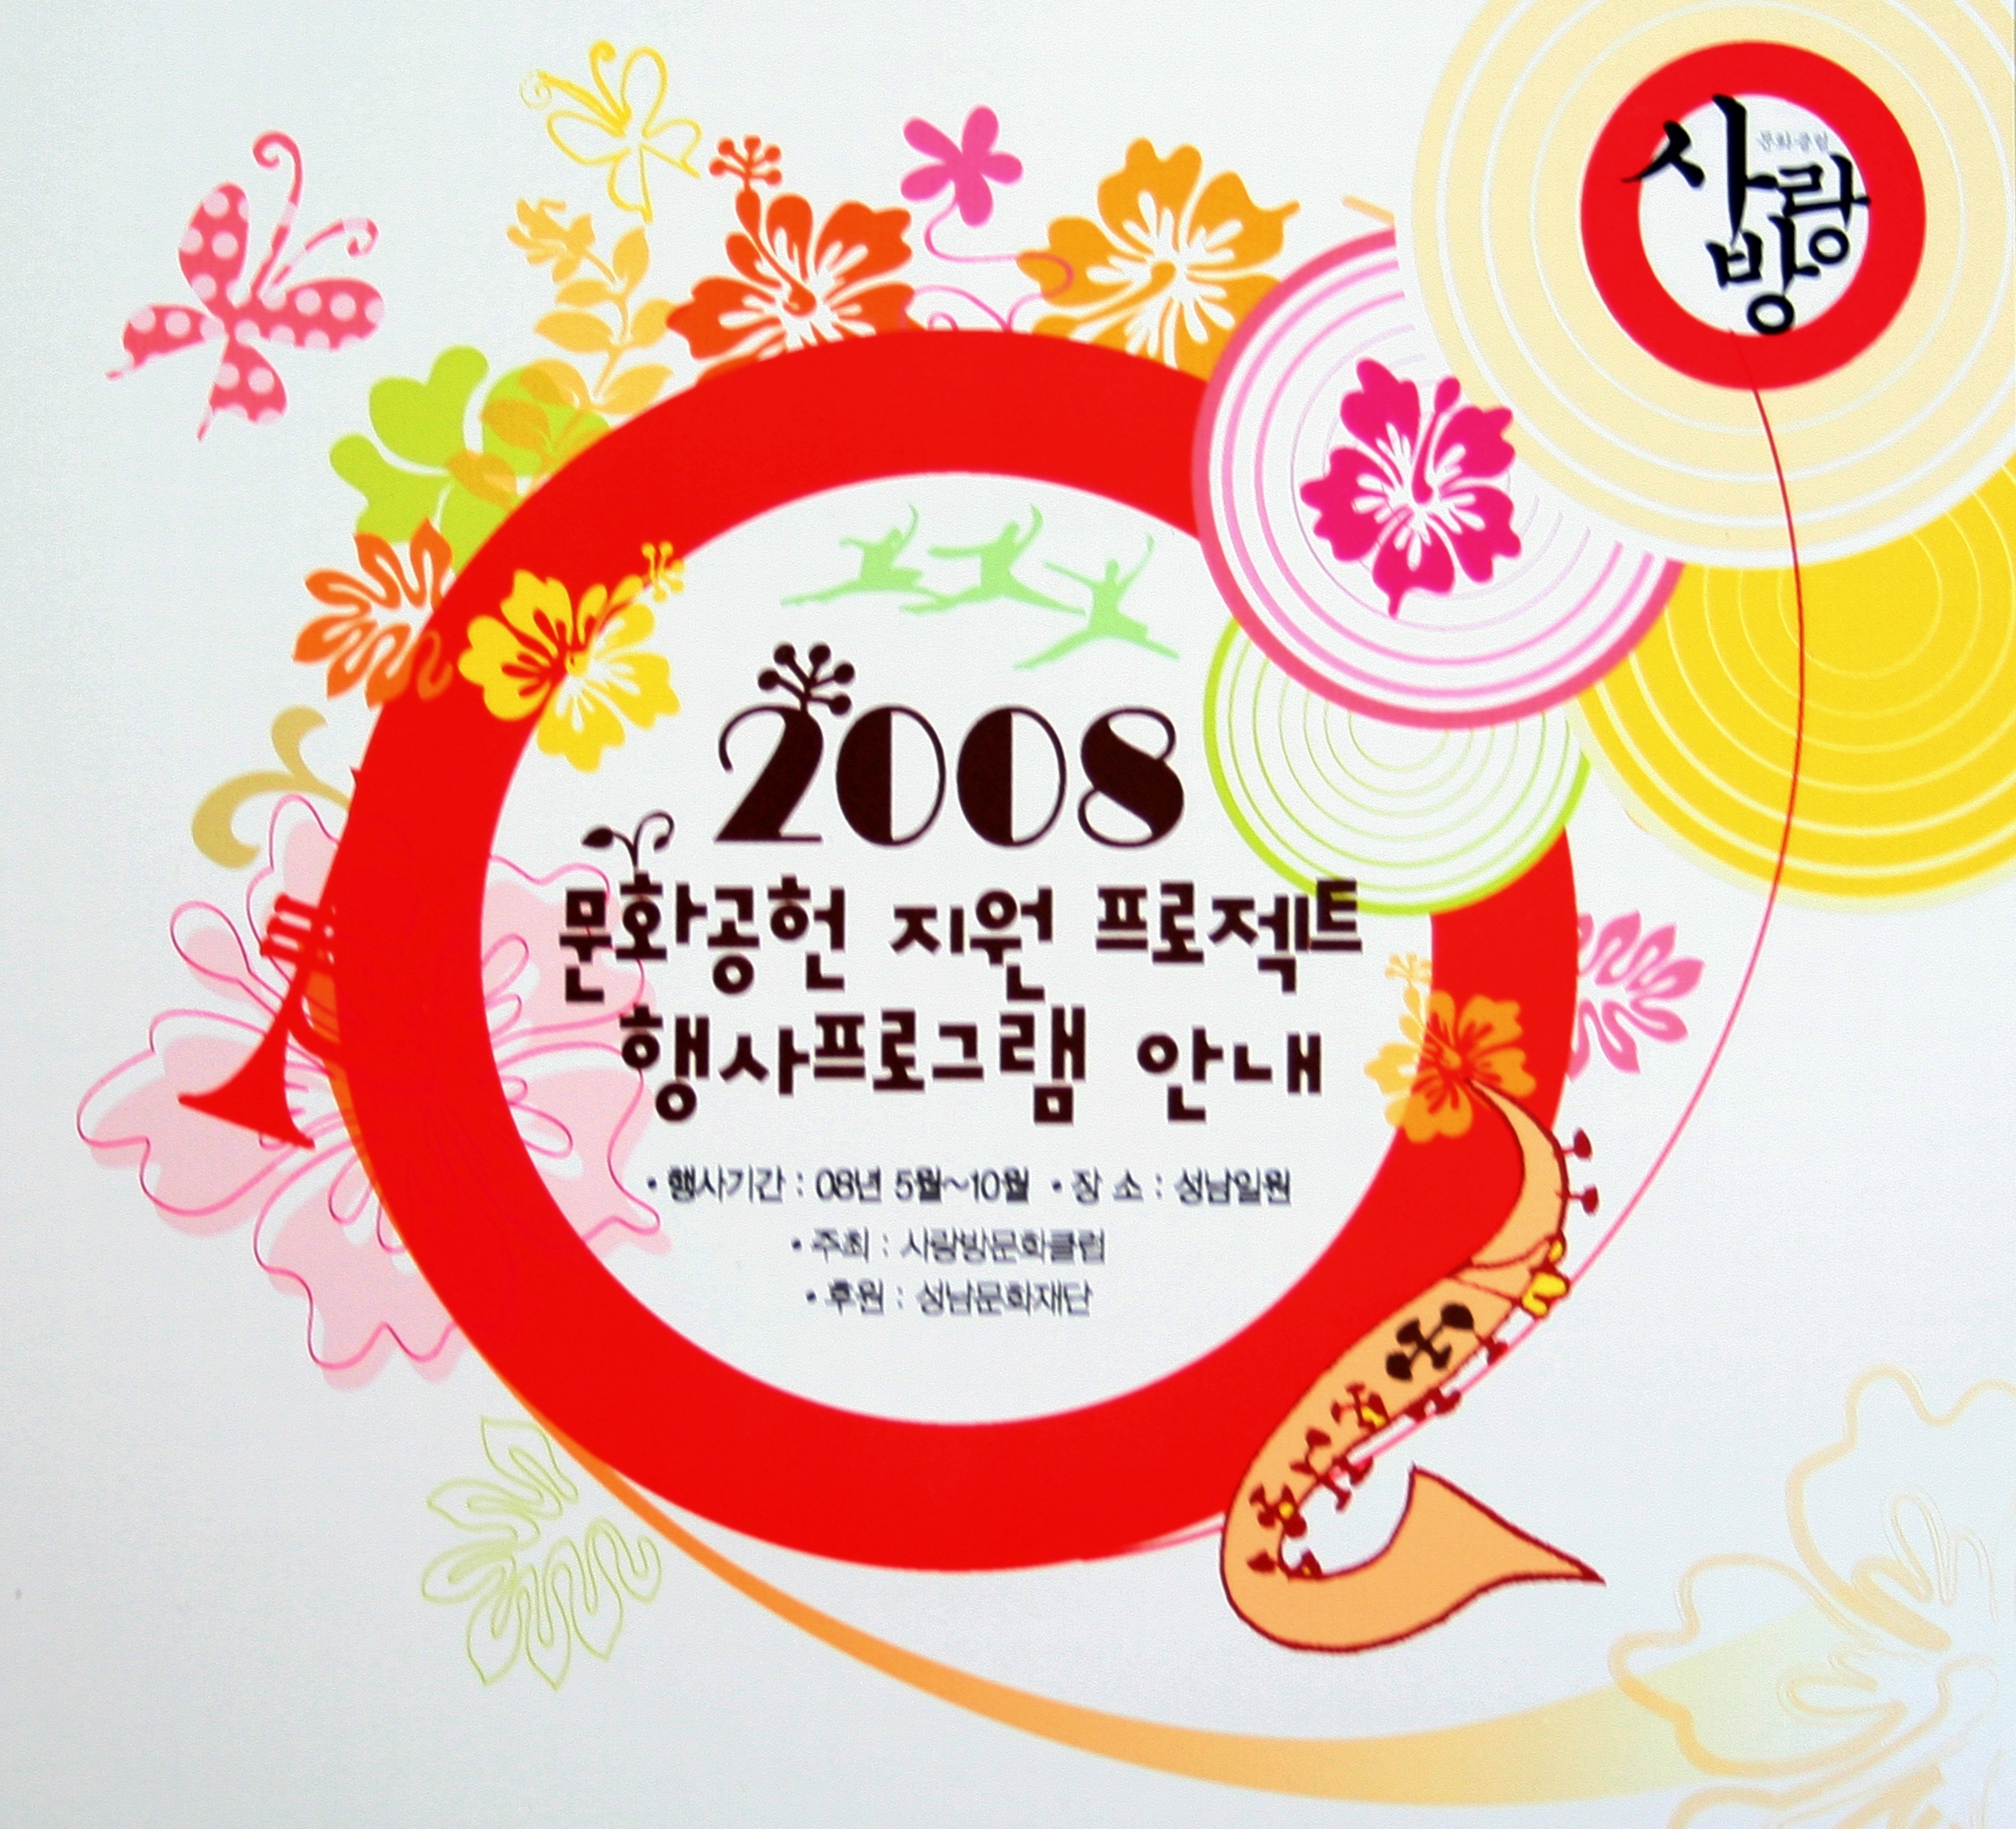 2008 문화공헌 지원 프로젝트 행사프로그램 안내/ 행사기간:08년 5월~10월/ 장소:성남일원